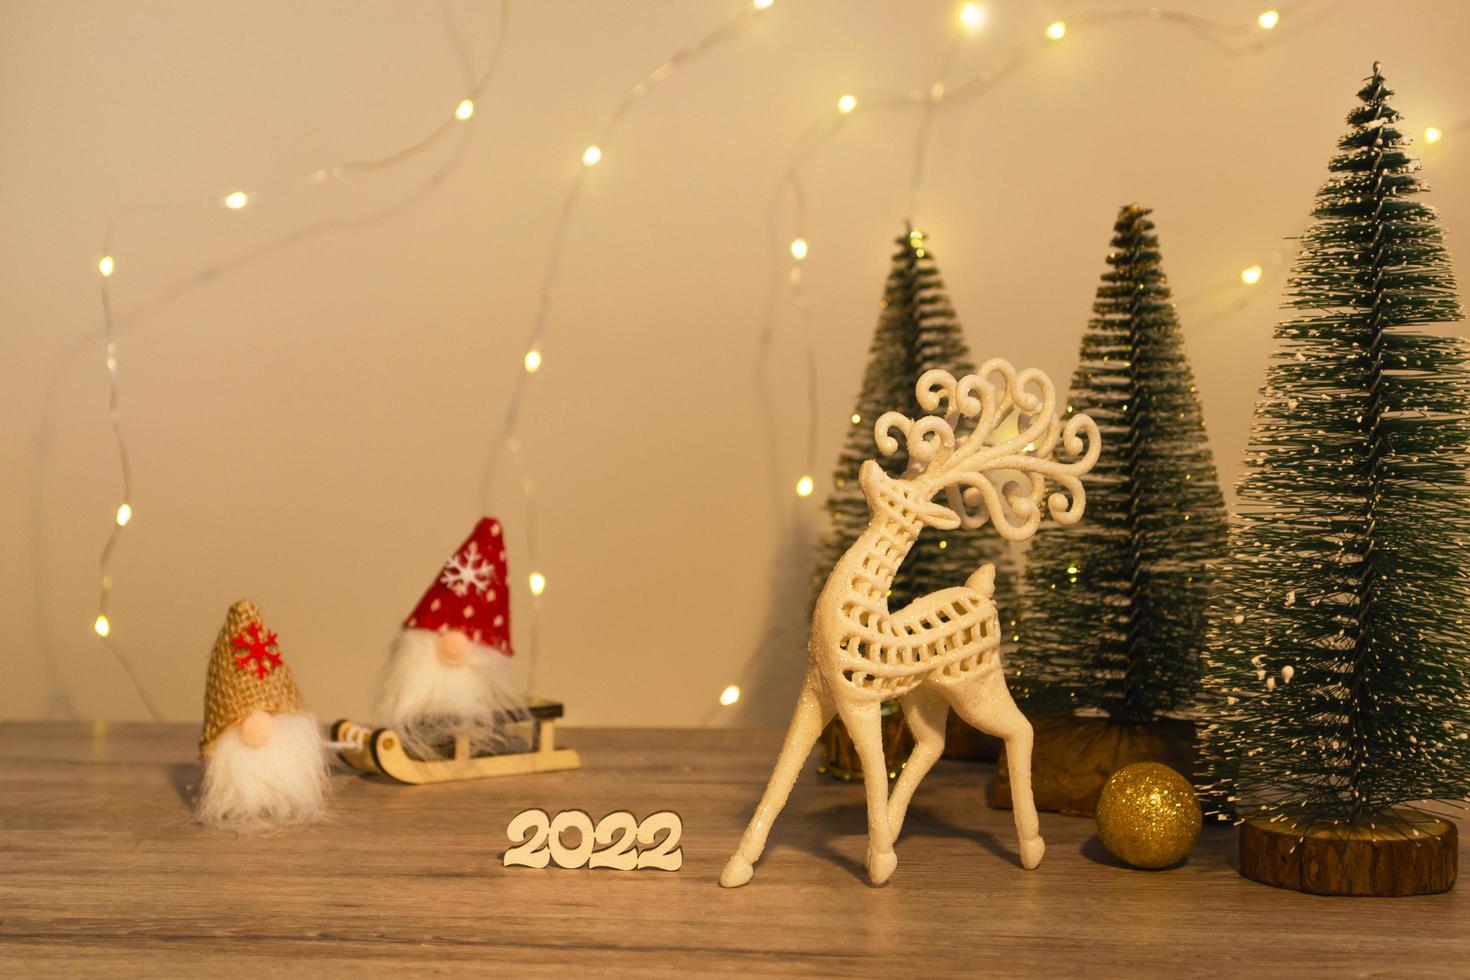 Weihnachts- und Neujahrsdekoration. Weihnachtshirsch, Zahlen 2022, Gnome auf einem Schlitten und Weihnachtsbäume auf einem hölzernen Hintergrund mit Lichtern. Weihnachtskarte foto